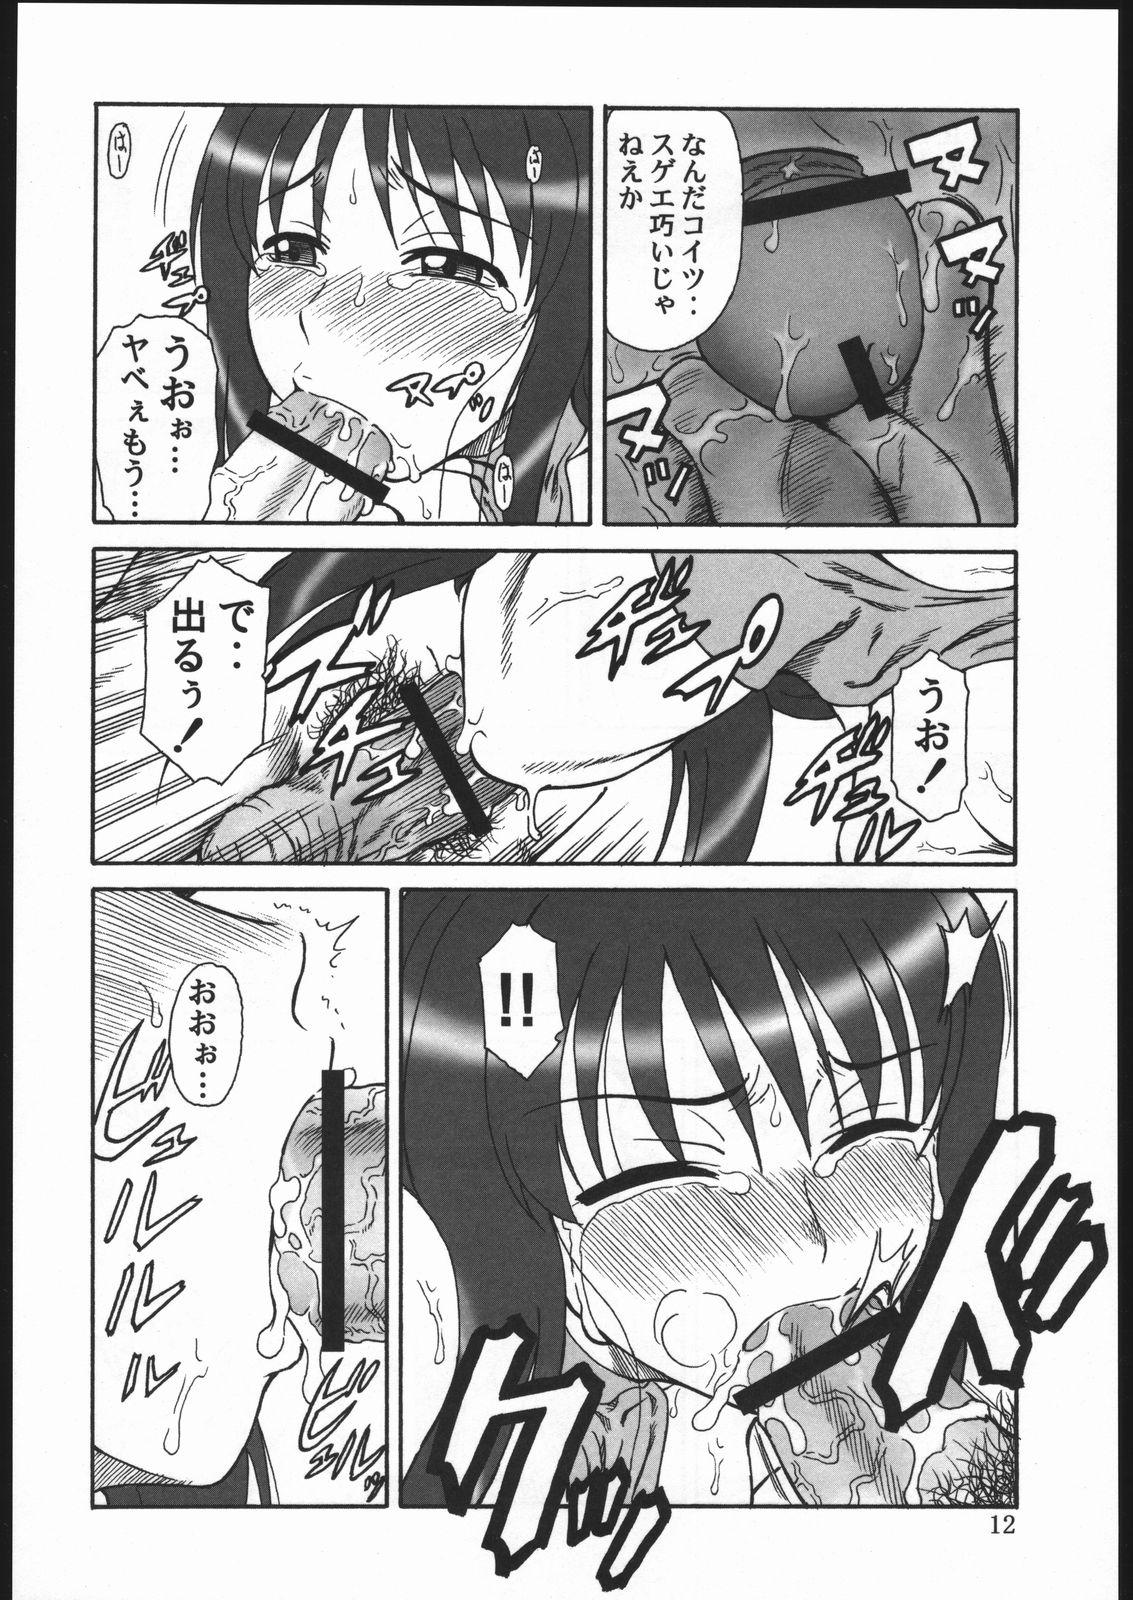 Spandex Gyokusai Kakugo 6 Kamikaze Attack!! - Kaleido star Adorable - Page 11